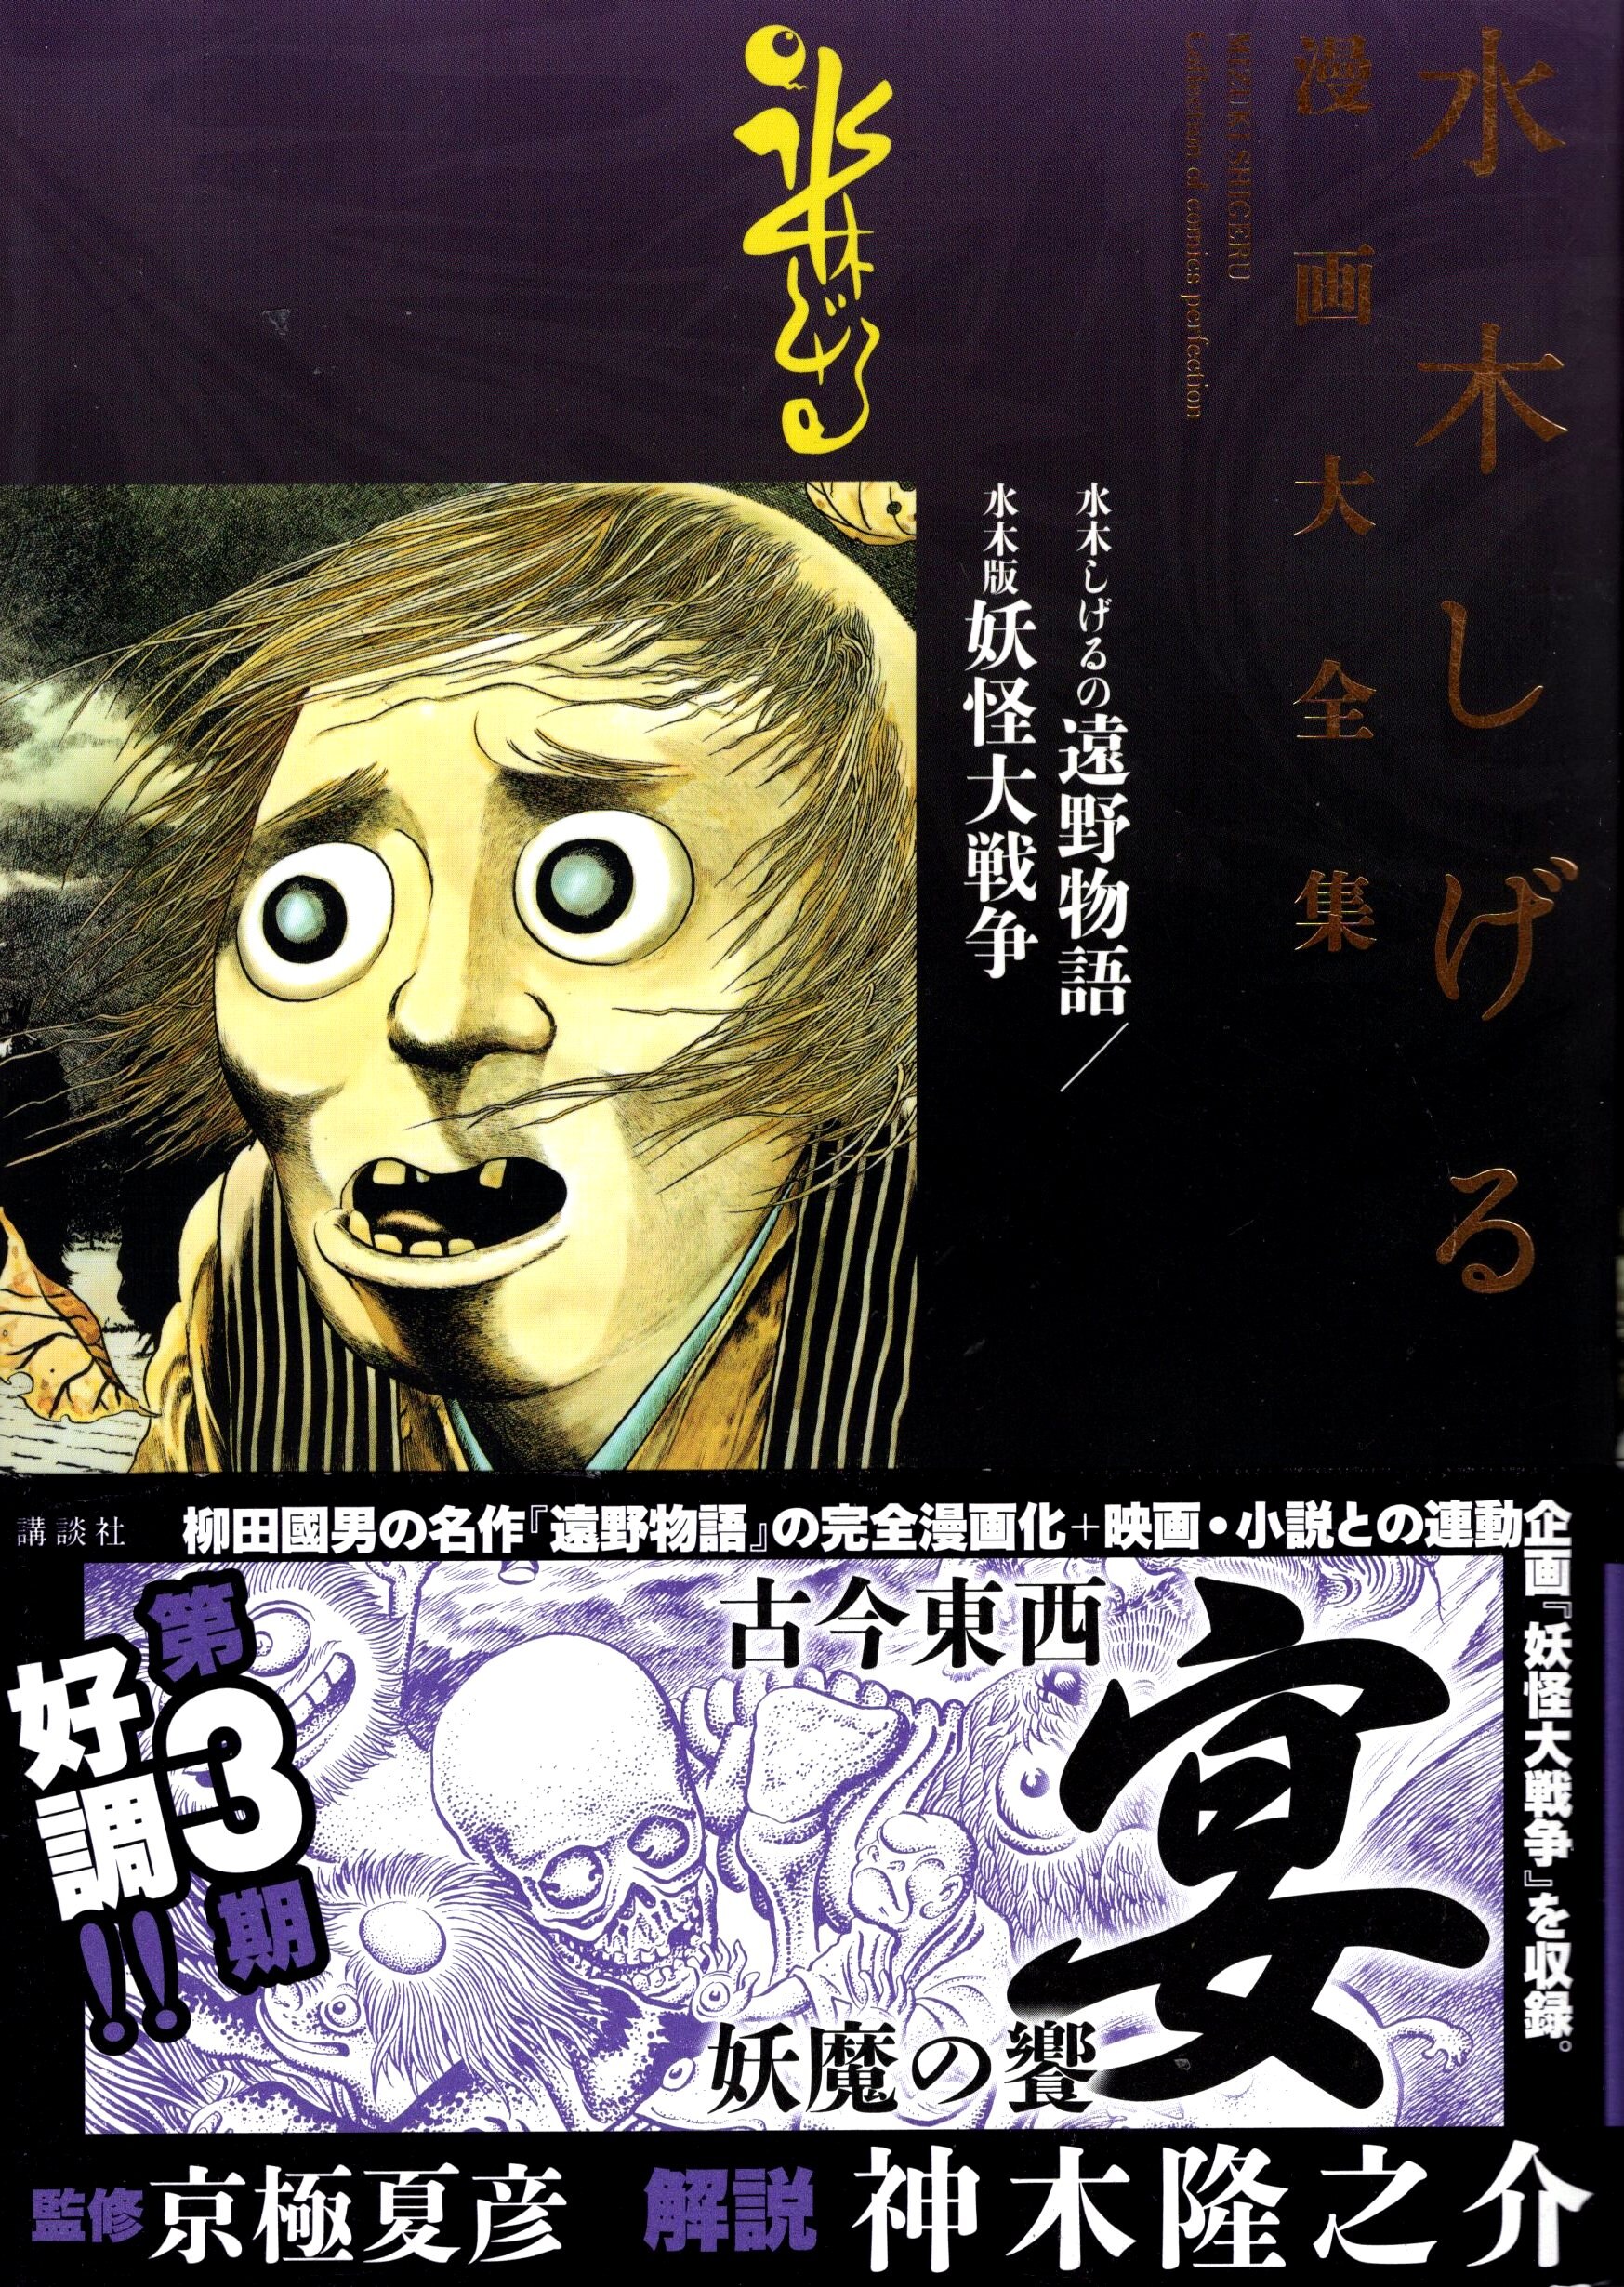 Kodansha Shigeru Mizuki manga large complete works Shigeru Mizuki Shigeru  Mizuki of Tono Monogatari / Mizuki version of The Great Yokai War (complete  product) | Mandarake Online Shop